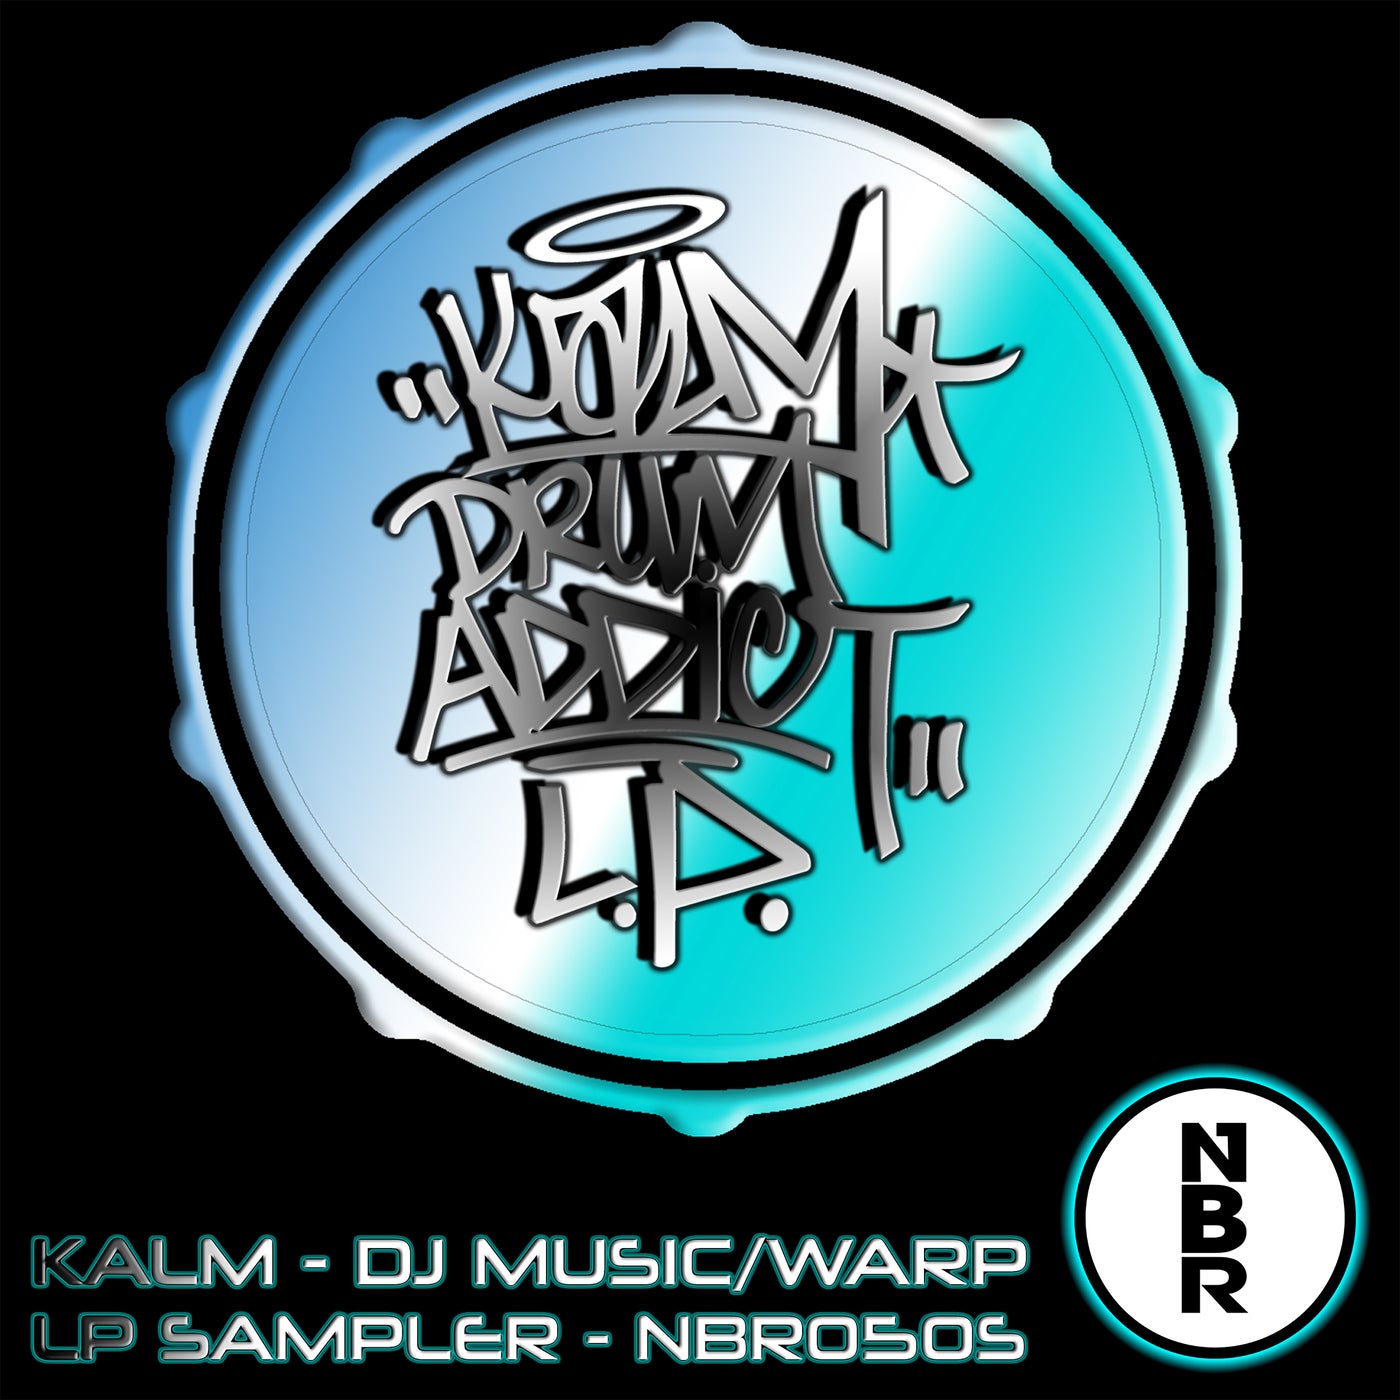 DJ Music / Warp LP Sampler